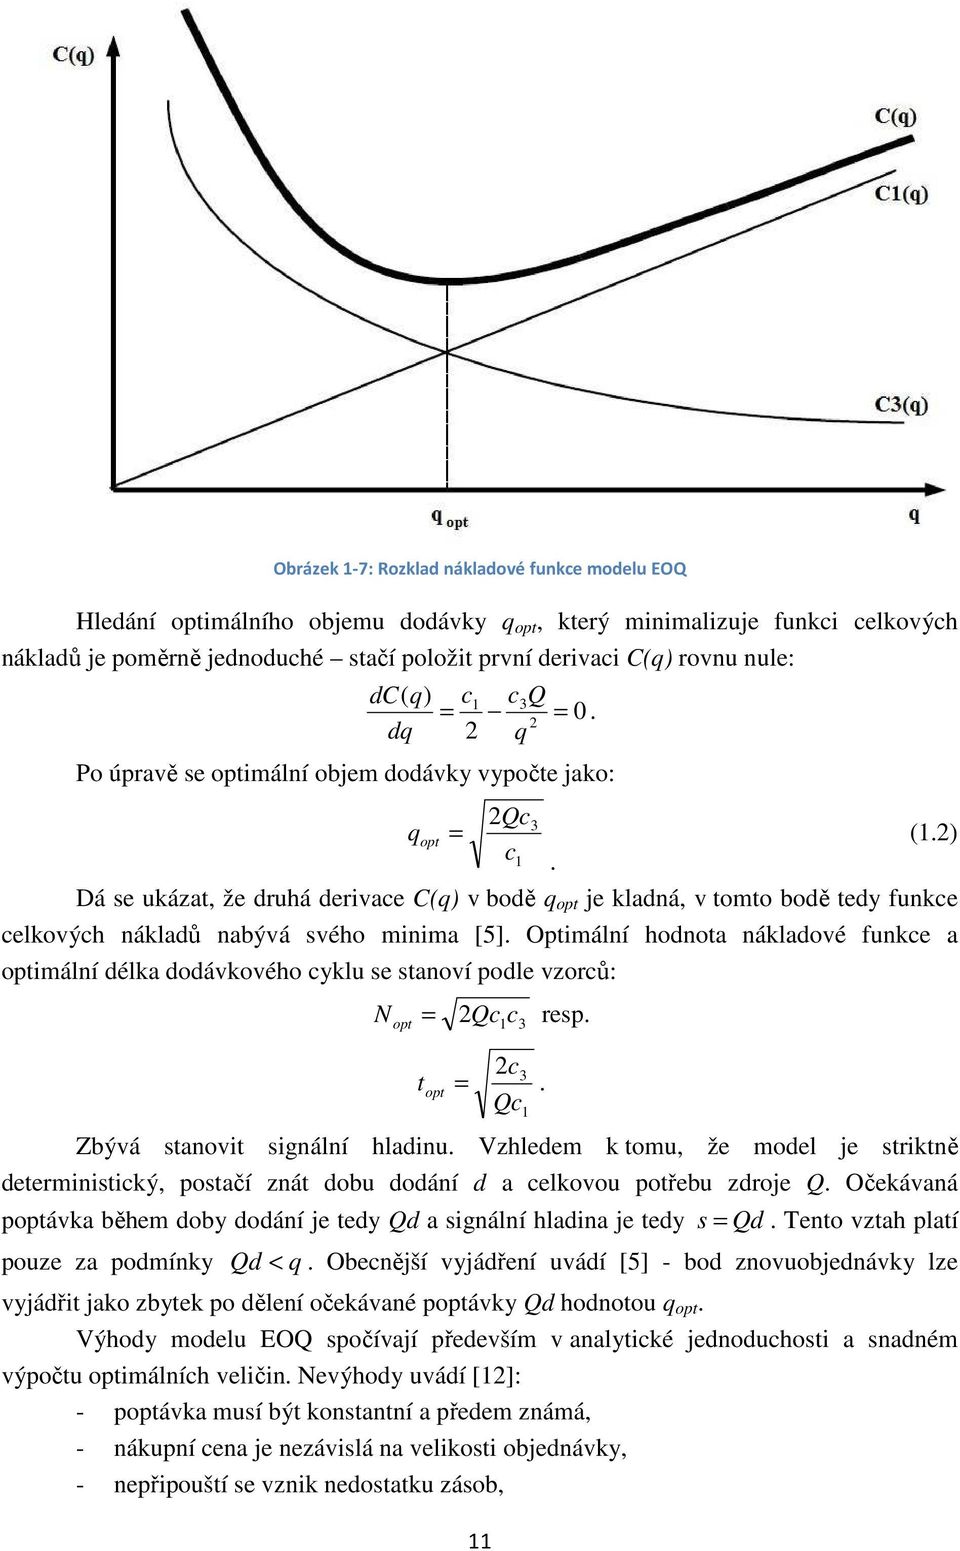 Optimální hodnota nákladové funke a optimální délka dodávkového yklu e tanoví podle vzorů: N opt = Q rep. 3 Q 3 t opt =. Zbývá tanovit ignální hladinu.